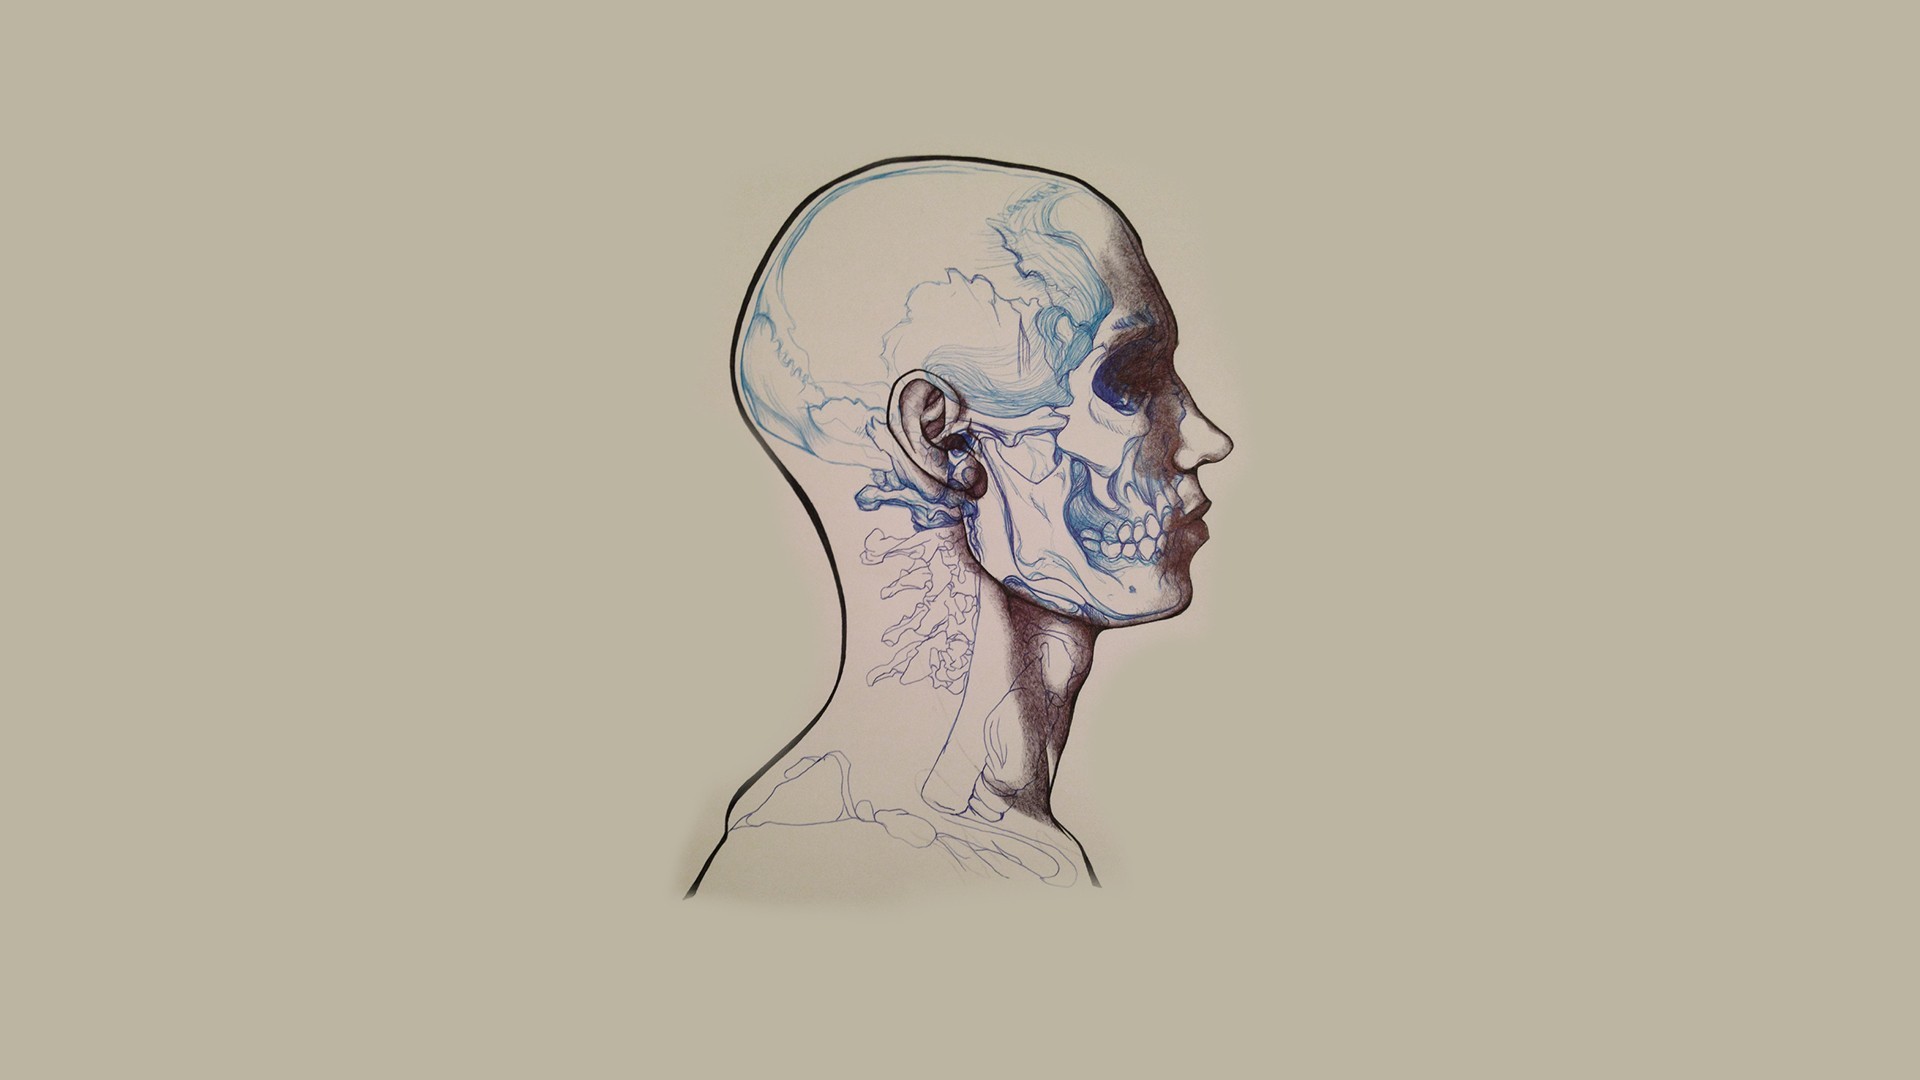 General 1920x1080 skull minimalism artwork people anatomy simple background head bones